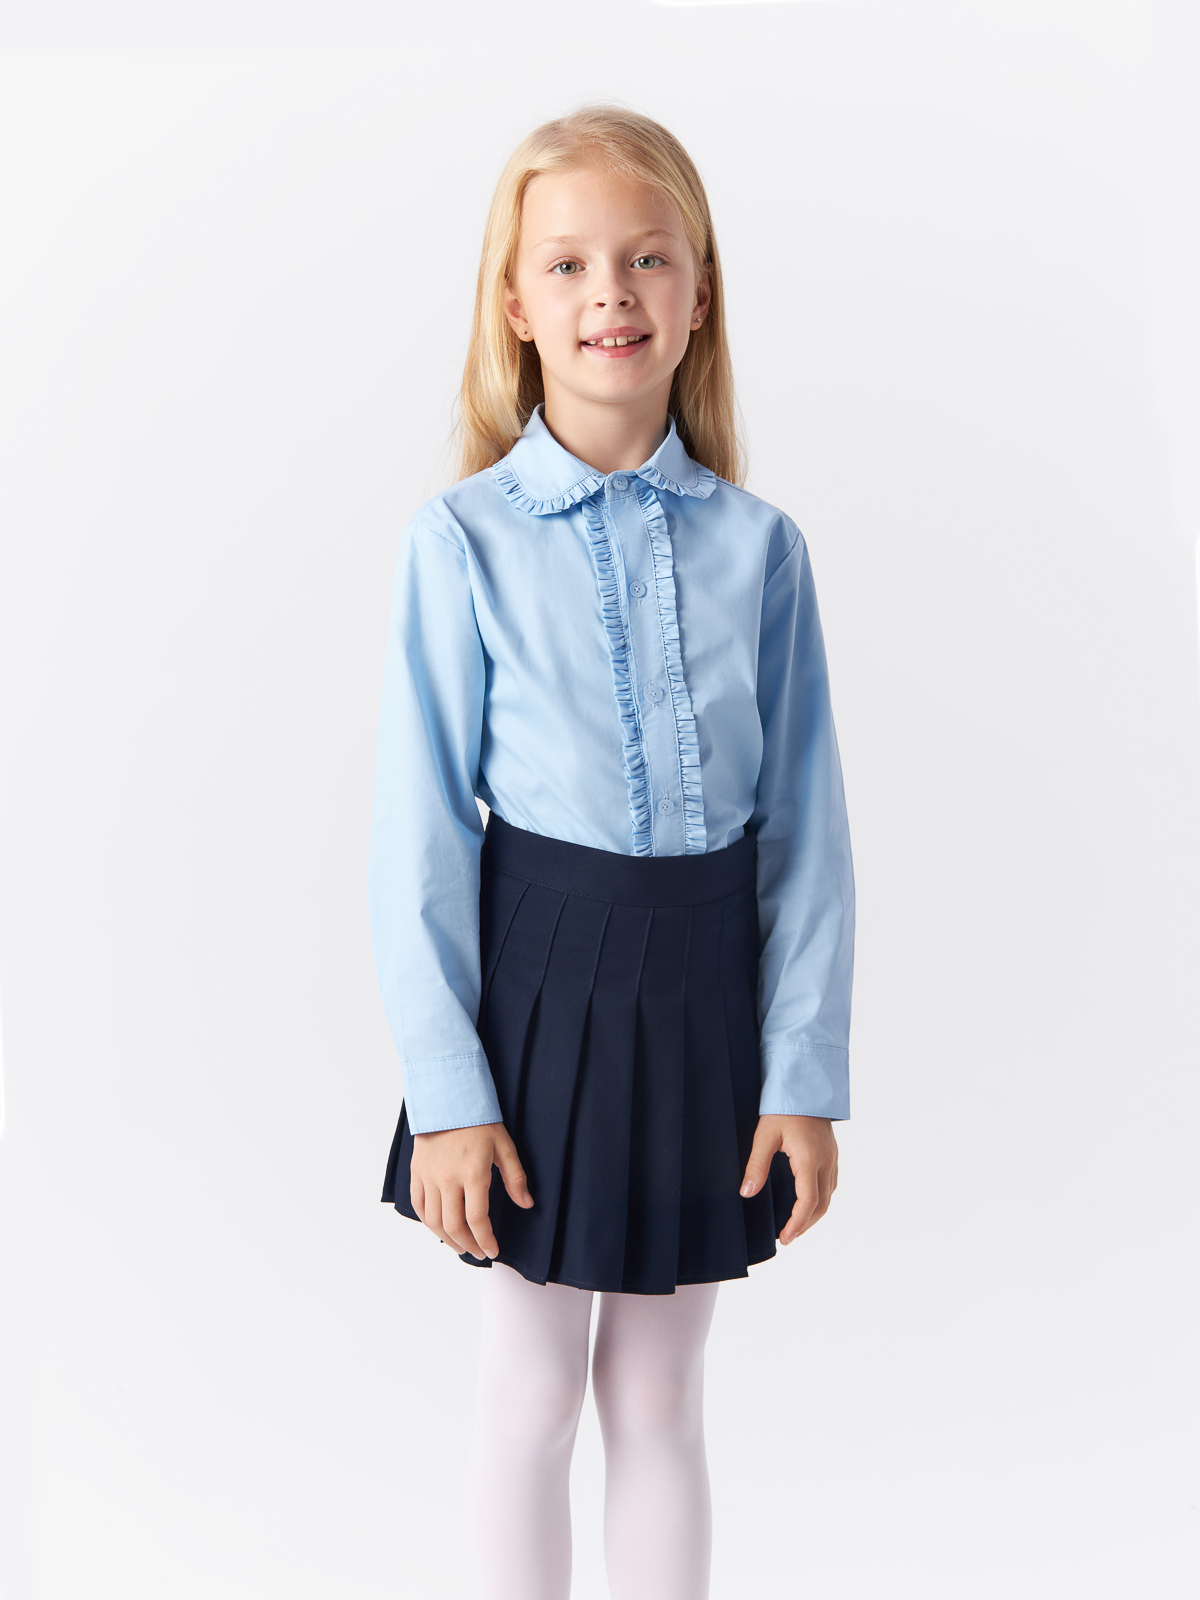 Блузка Yiwu Xflot Supply Chain детская, BS-2blue, размер 150 см блузка трикотажная школьная белая button blue 146